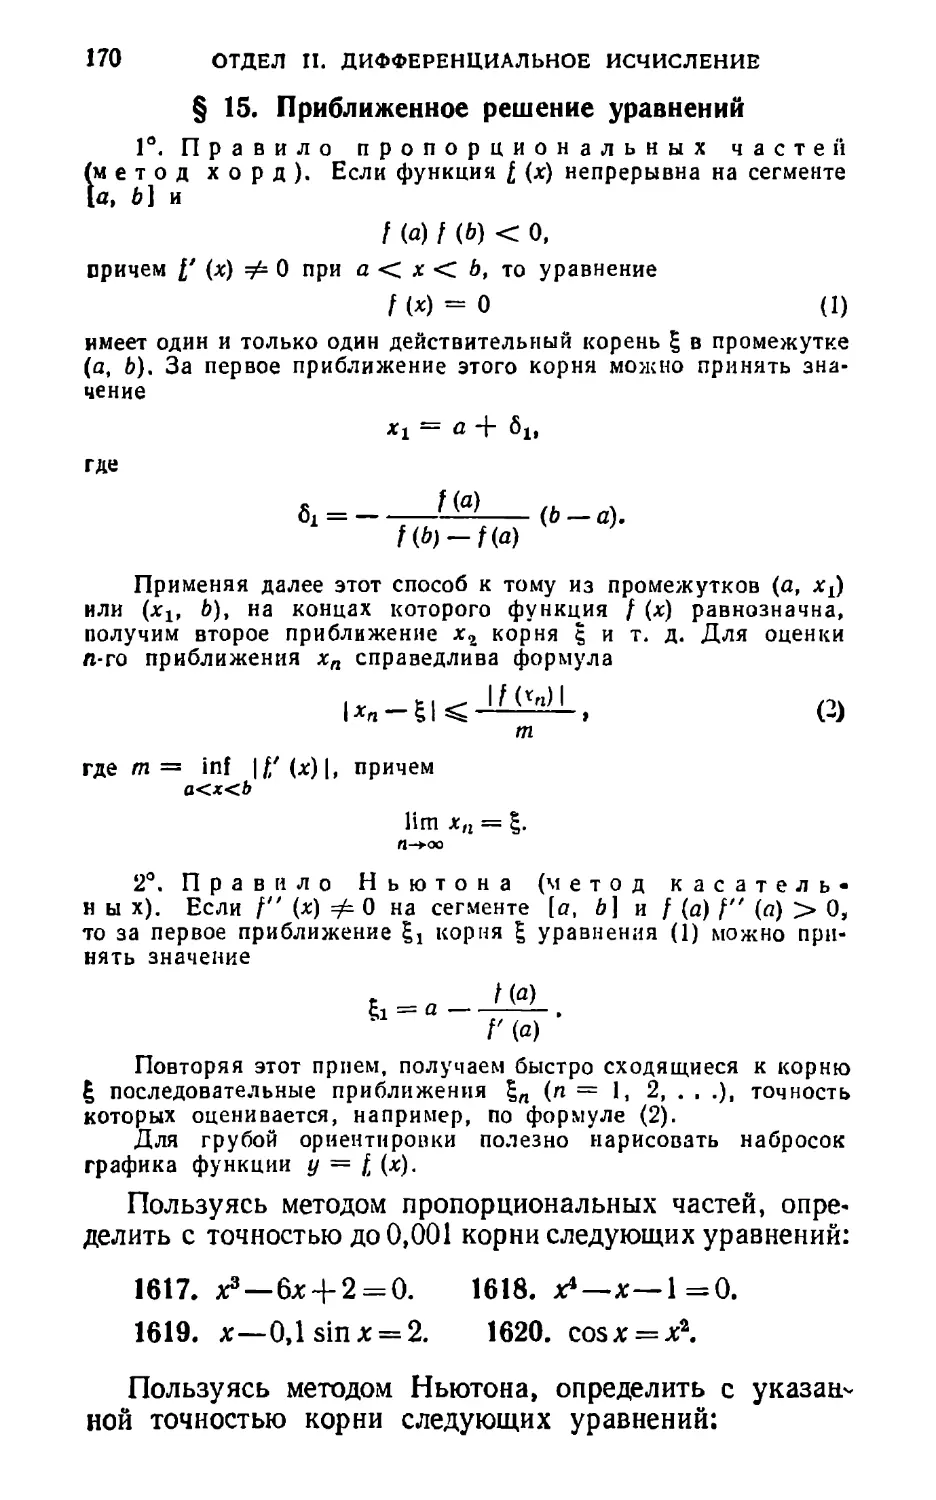 § 15. Приближенное решение уравнений